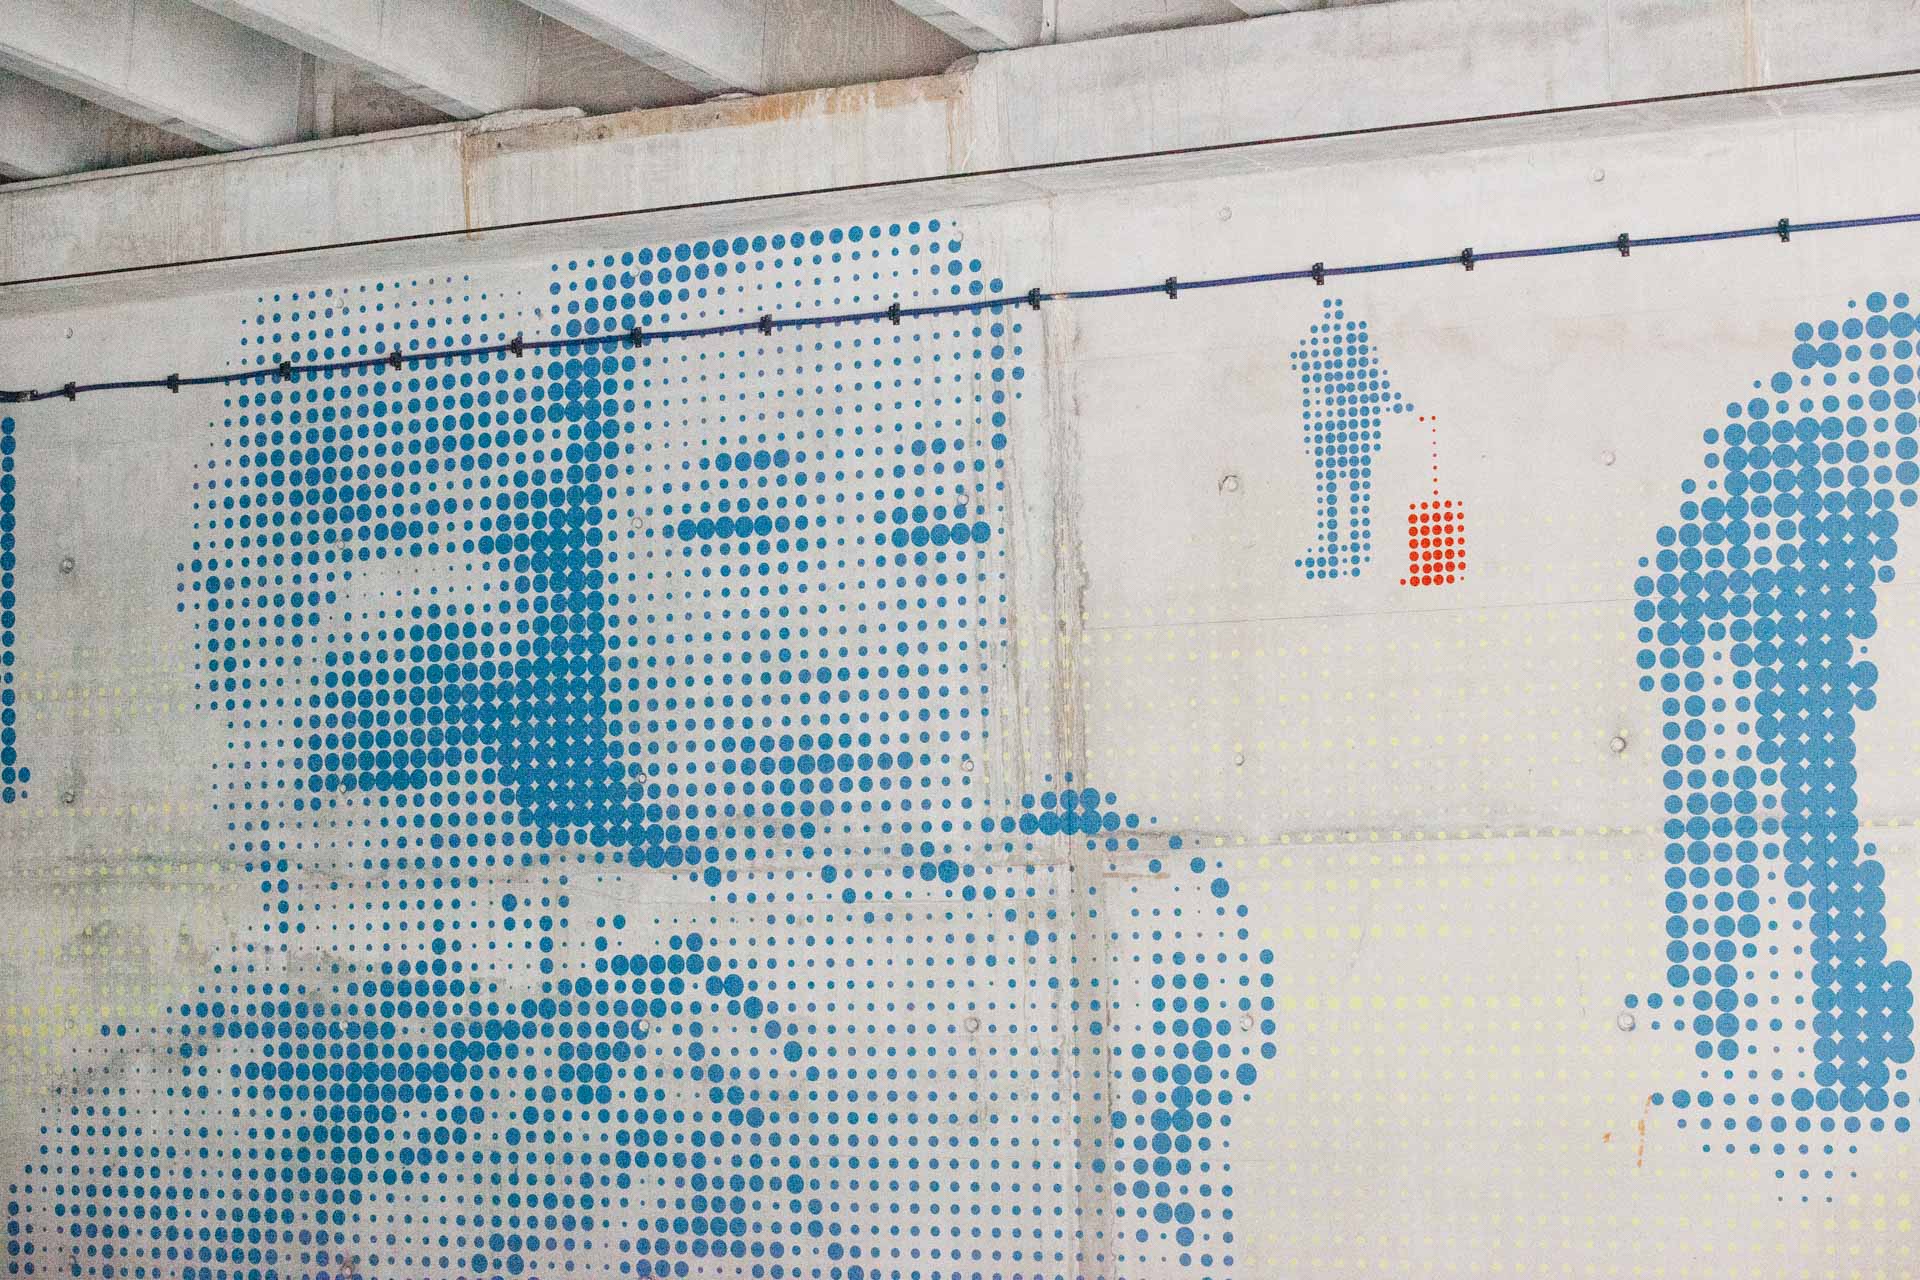 kunstwerk op wand opgebouwd uit blauwe stippen, twee vrouwen omhelzen elkaar